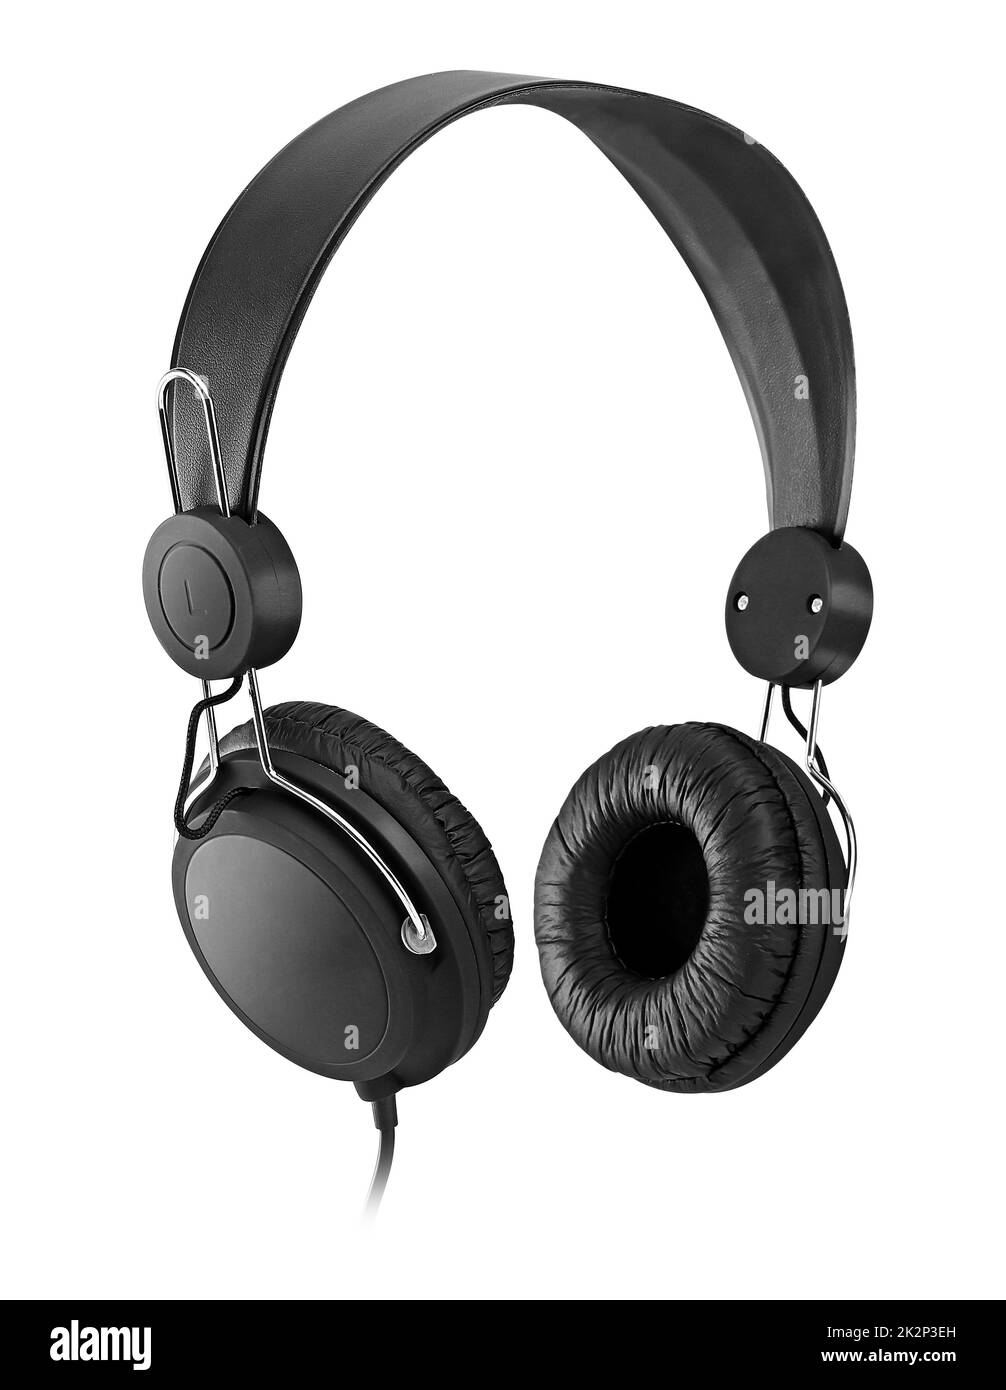 Black headphones over white Stock Photo